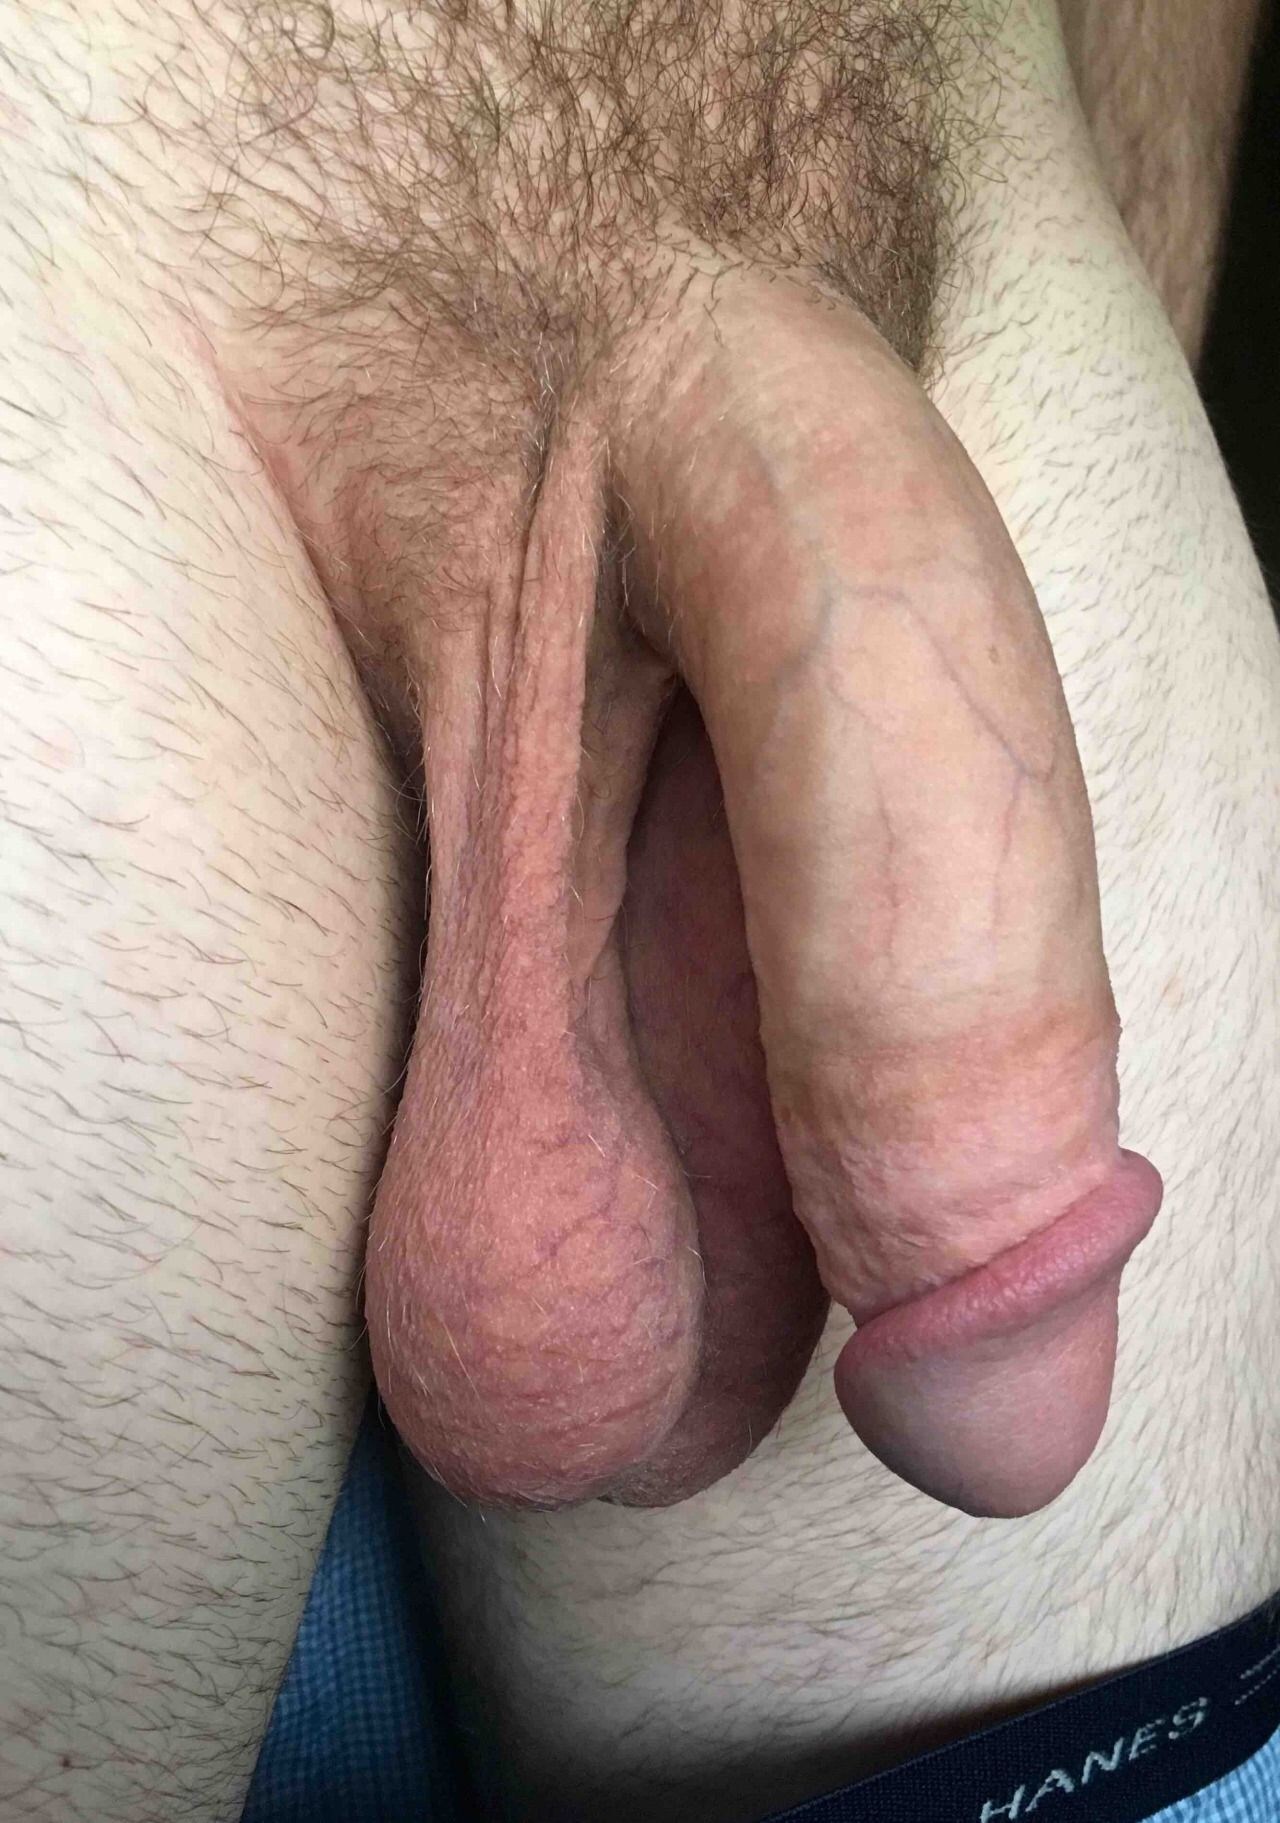 Huge Limp Cock - Flaccid Dick Porn (80 photos) - motherless porn pics